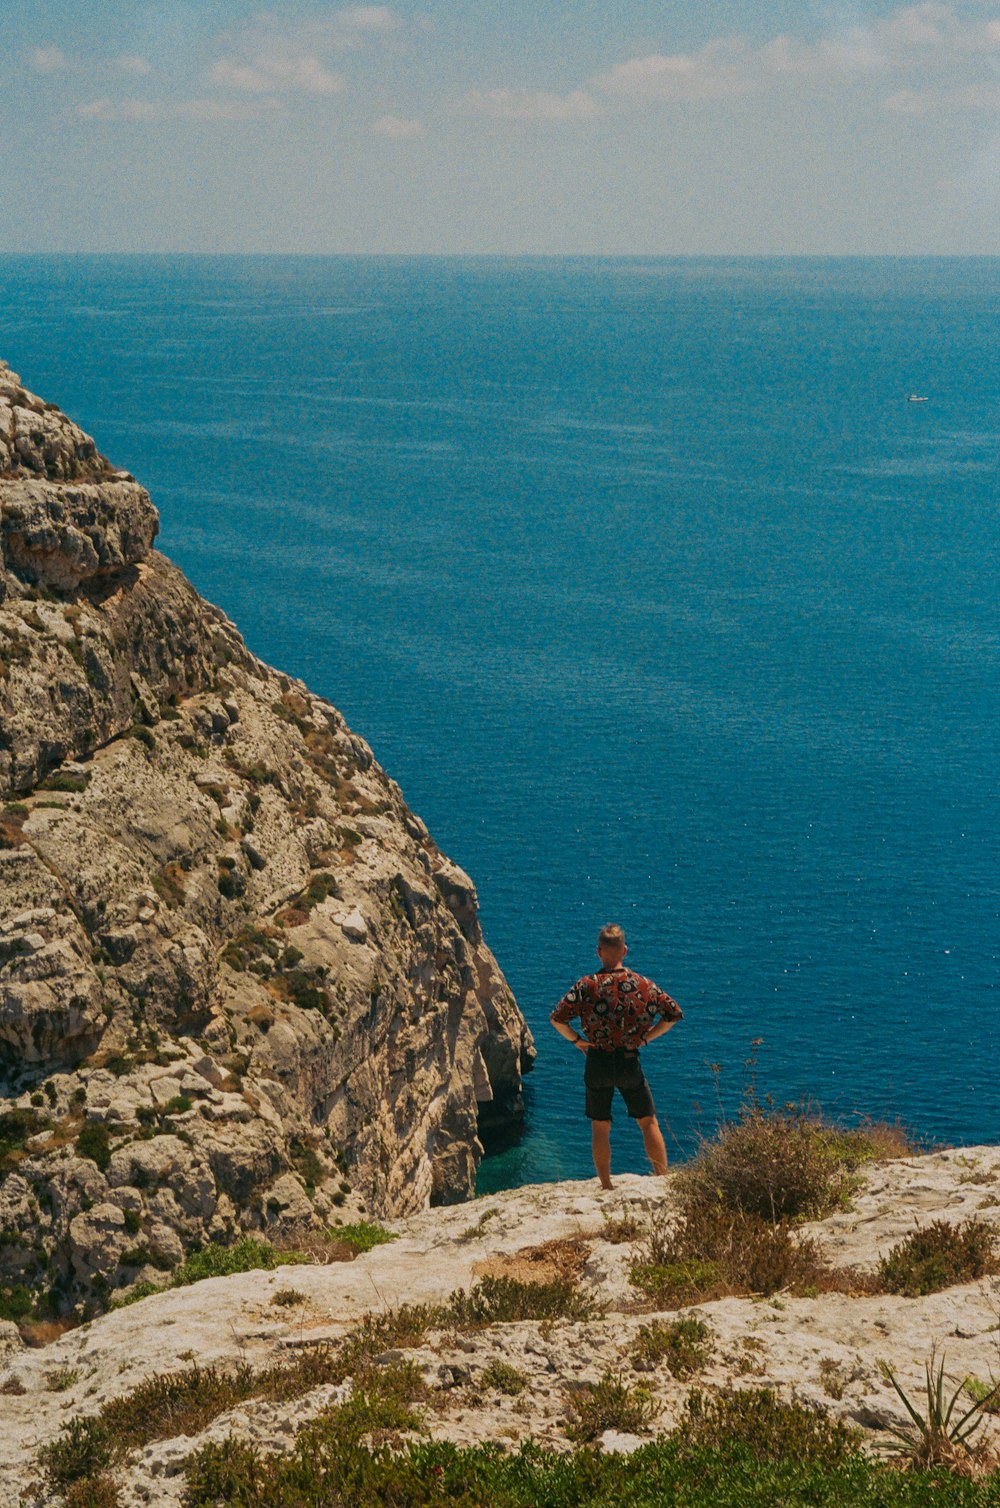 Frau in braunem Kleid, die tagsüber auf einer Felsformation in der Nähe des blauen Meeres steht